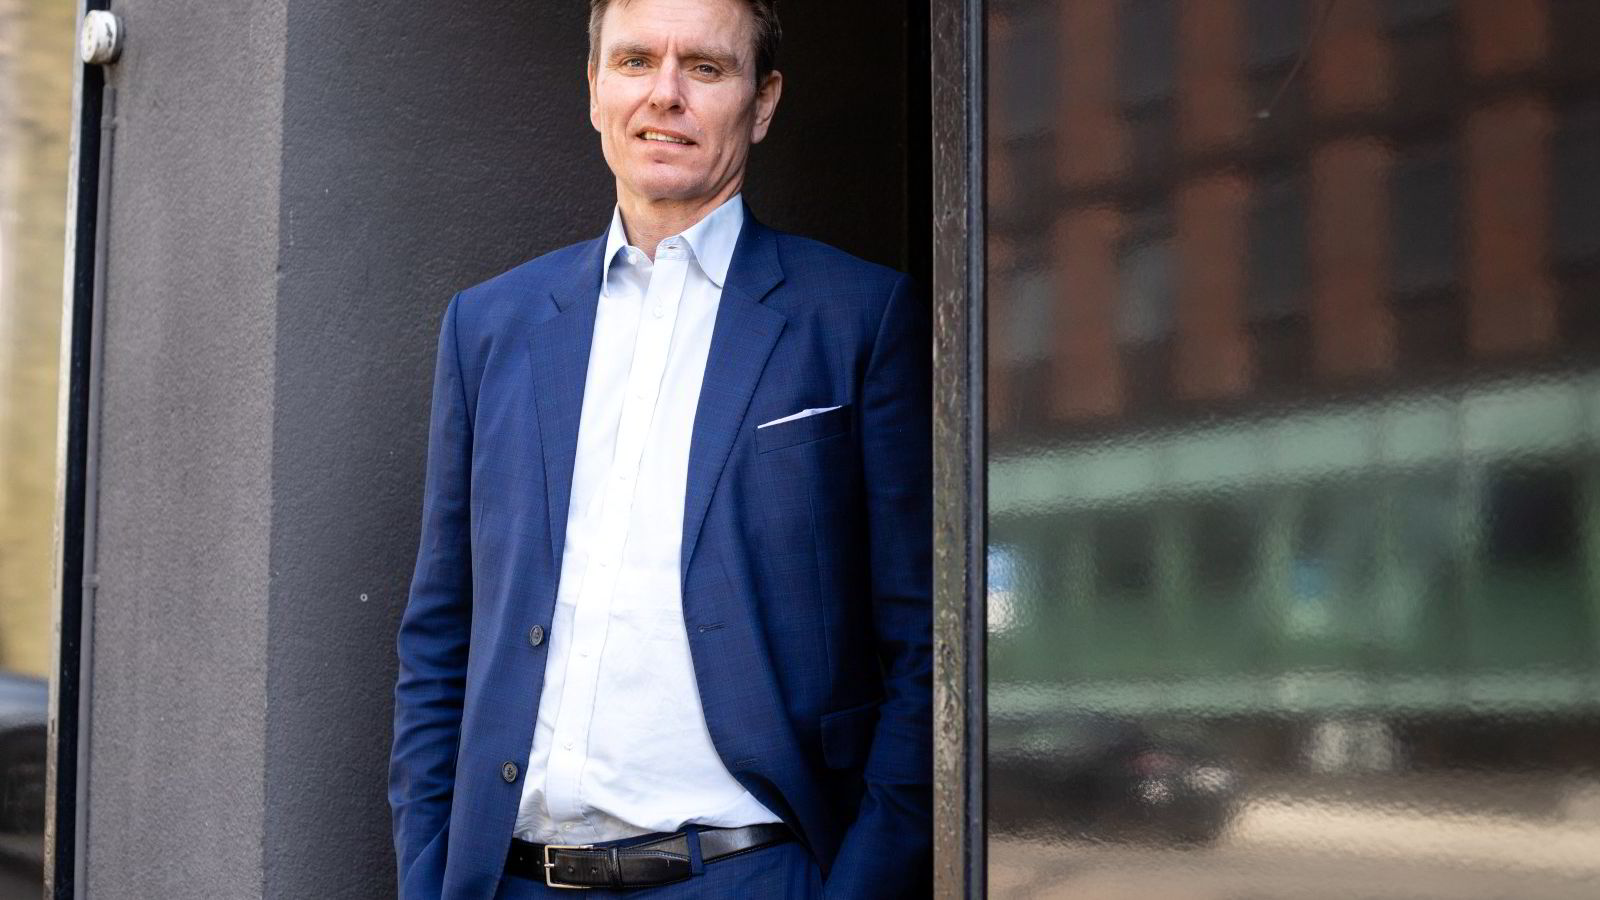 Rise on Oslo Børs - le directeur des investissements croit en un changement du marché : - Les perdants de cette année sont les gagnants de l'année prochaine - 9